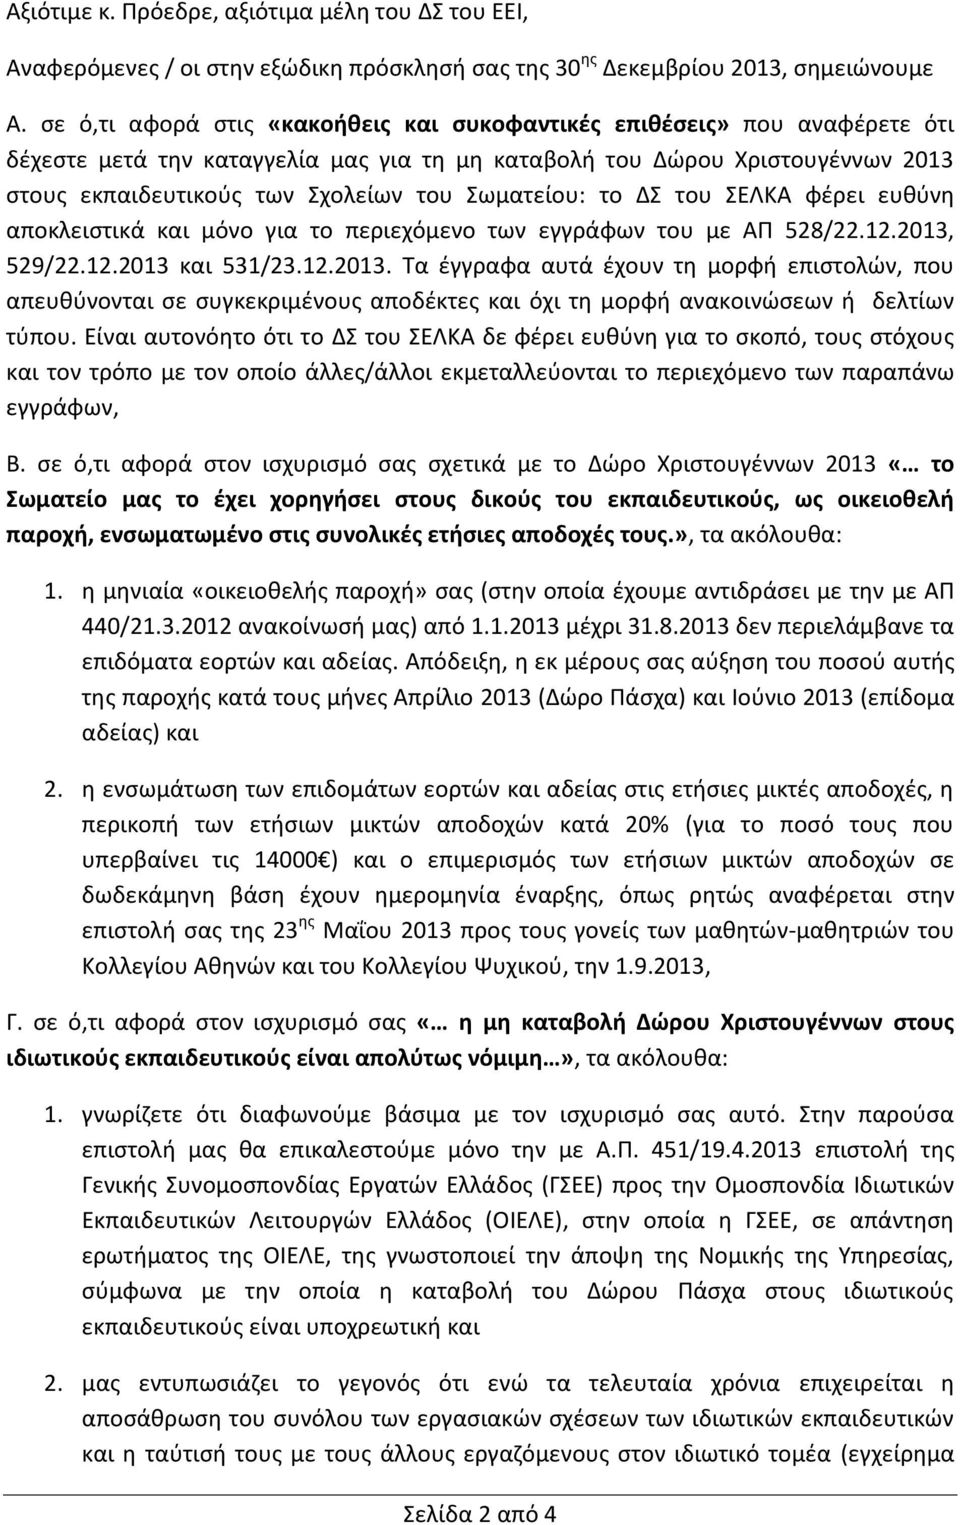 Σωματείου: το ΔΣ του ΣΕΛΚΑ φέρει ευθύνη αποκλειστικά και μόνο για το περιεχόμενο των εγγράφων του με ΑΠ 528/22.12.2013,